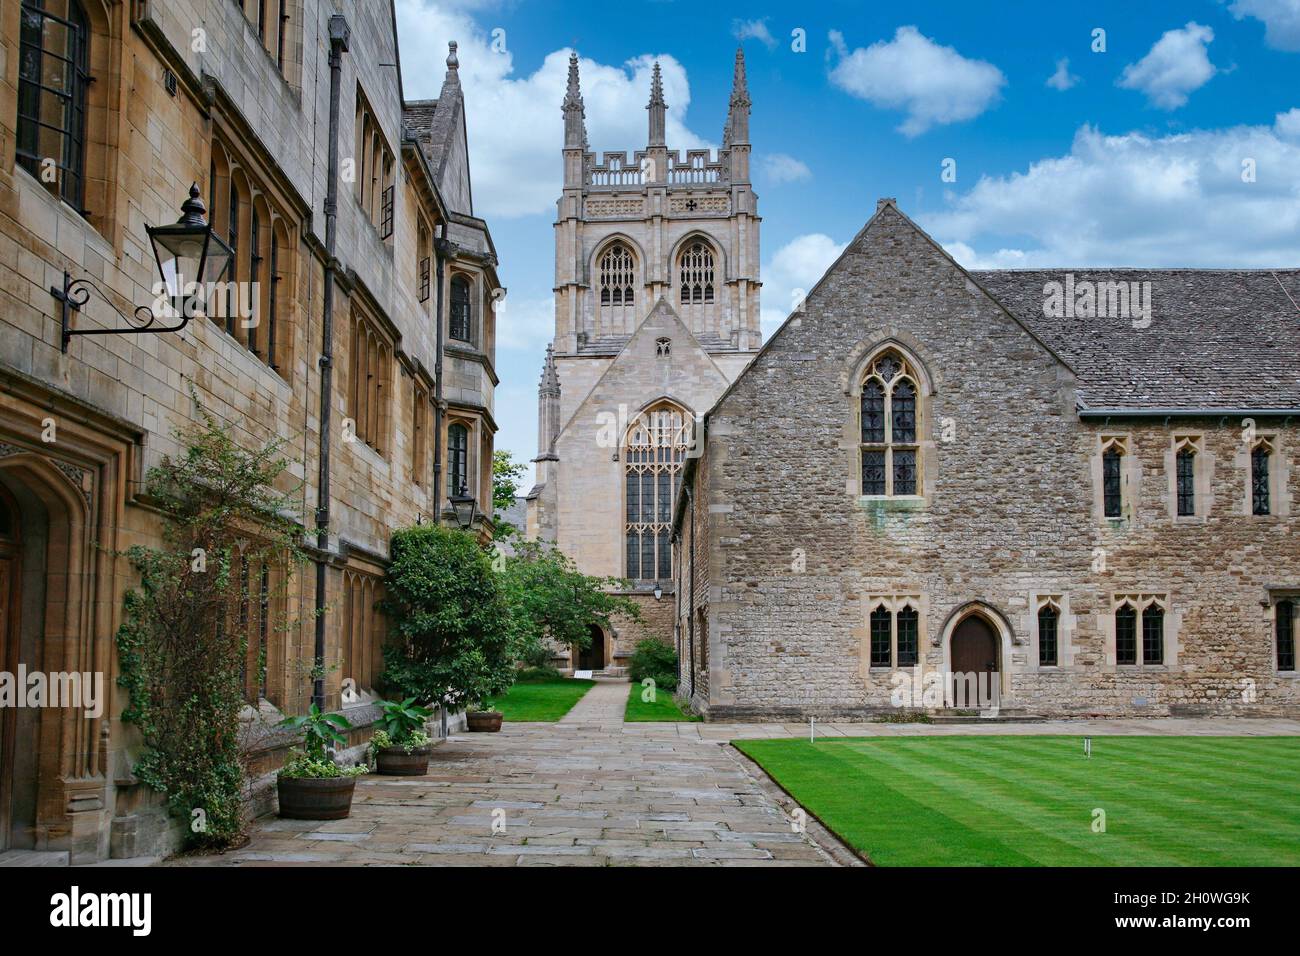 Oxford, Inghilterra - 9 luglio 2009: Il Merton College ha alcuni degli edifici medievali originali meglio conservati presso l'Università di Oxford Foto Stock